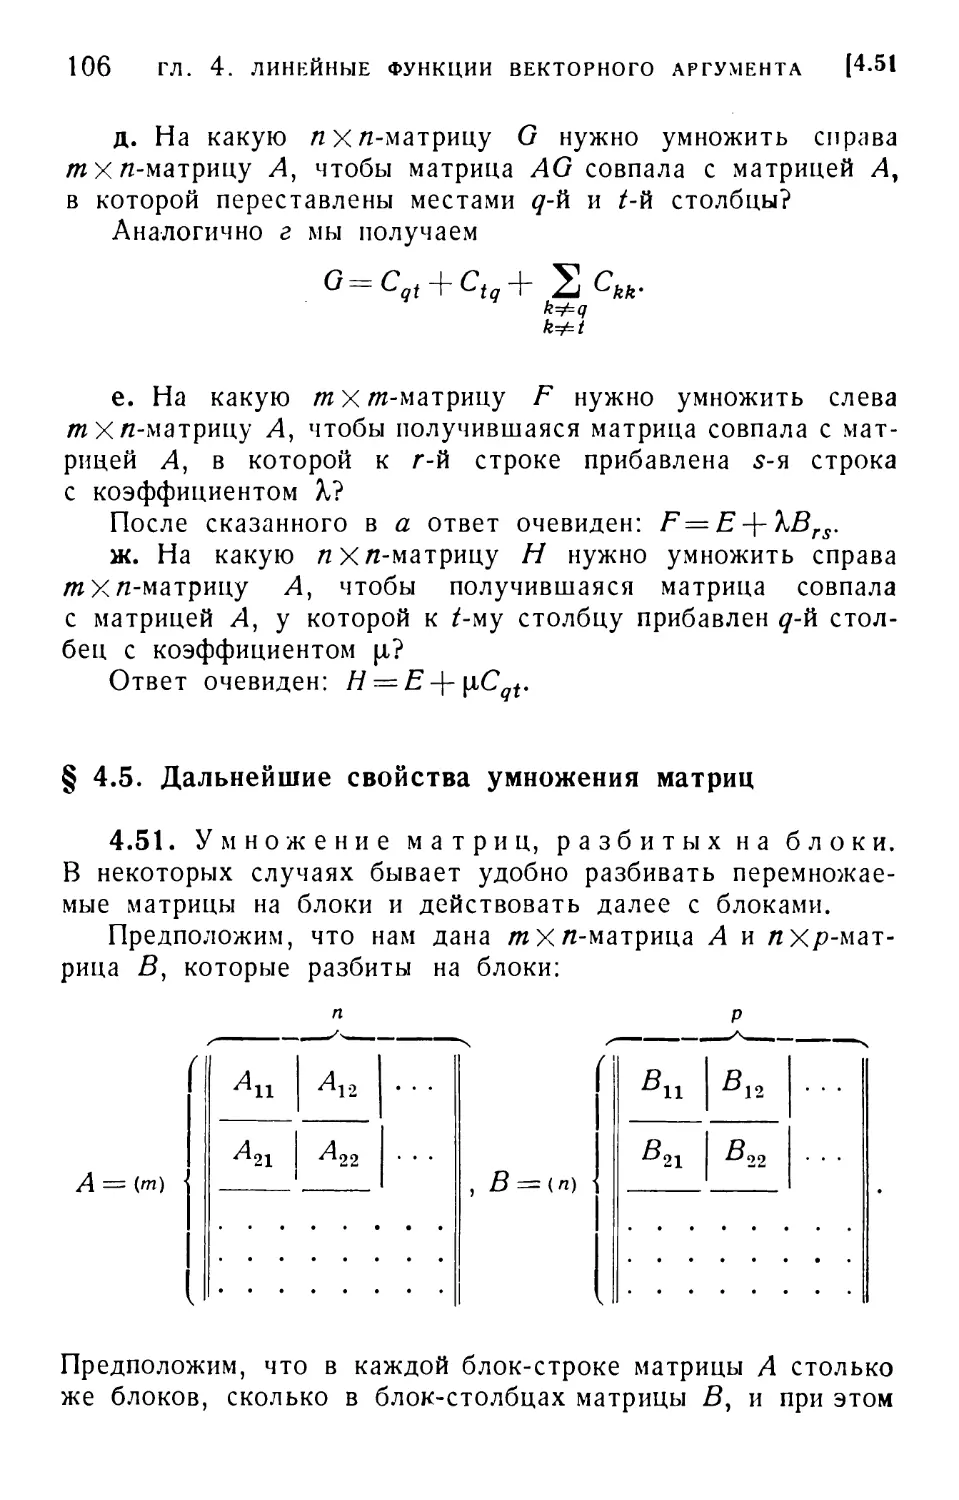 § 4.5. Дальнейшие свойства умножения матриц